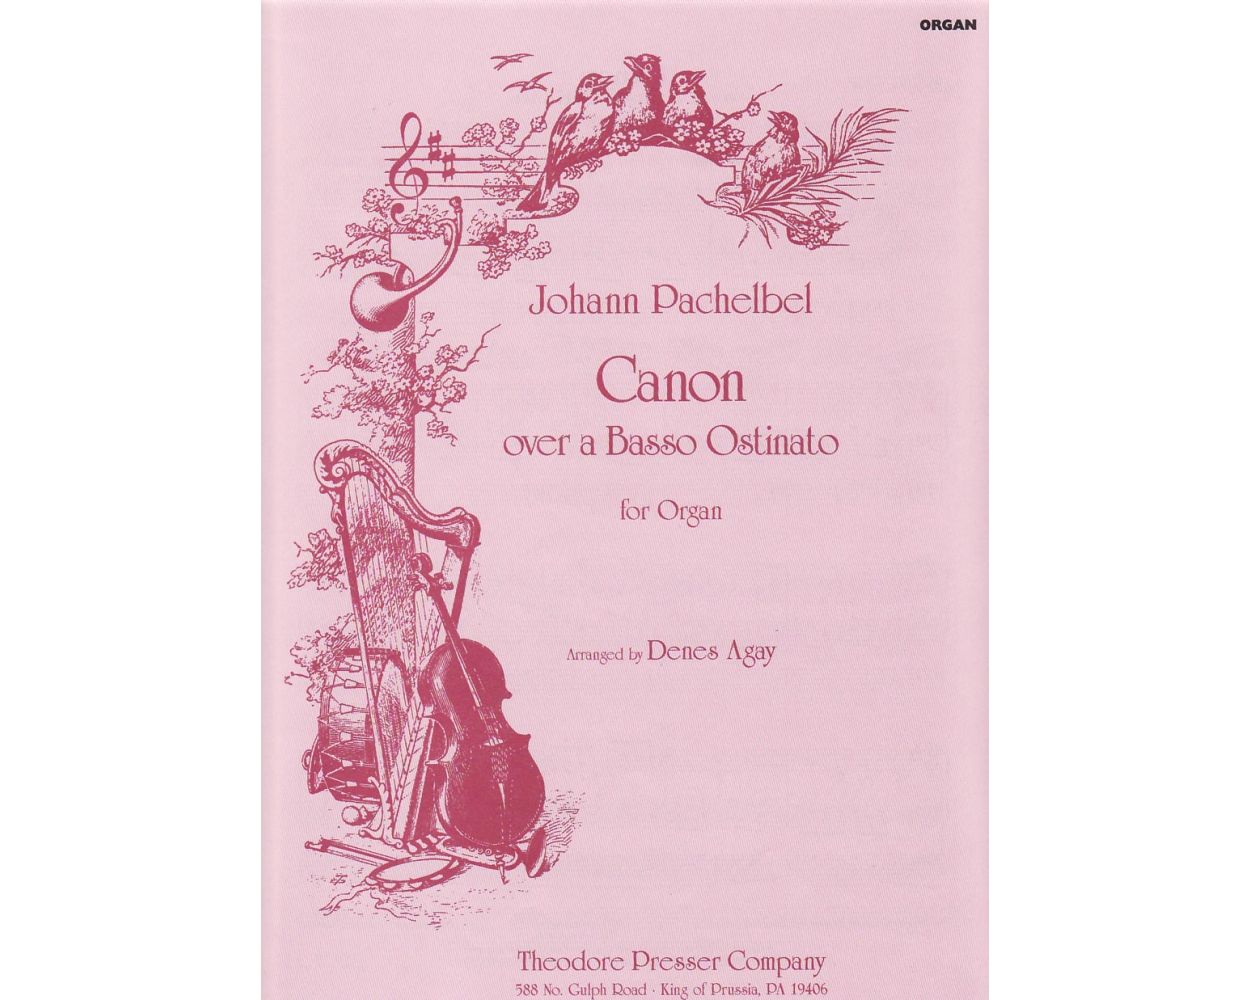 Pachelbel Canon over a Basso Ostinato for Organ